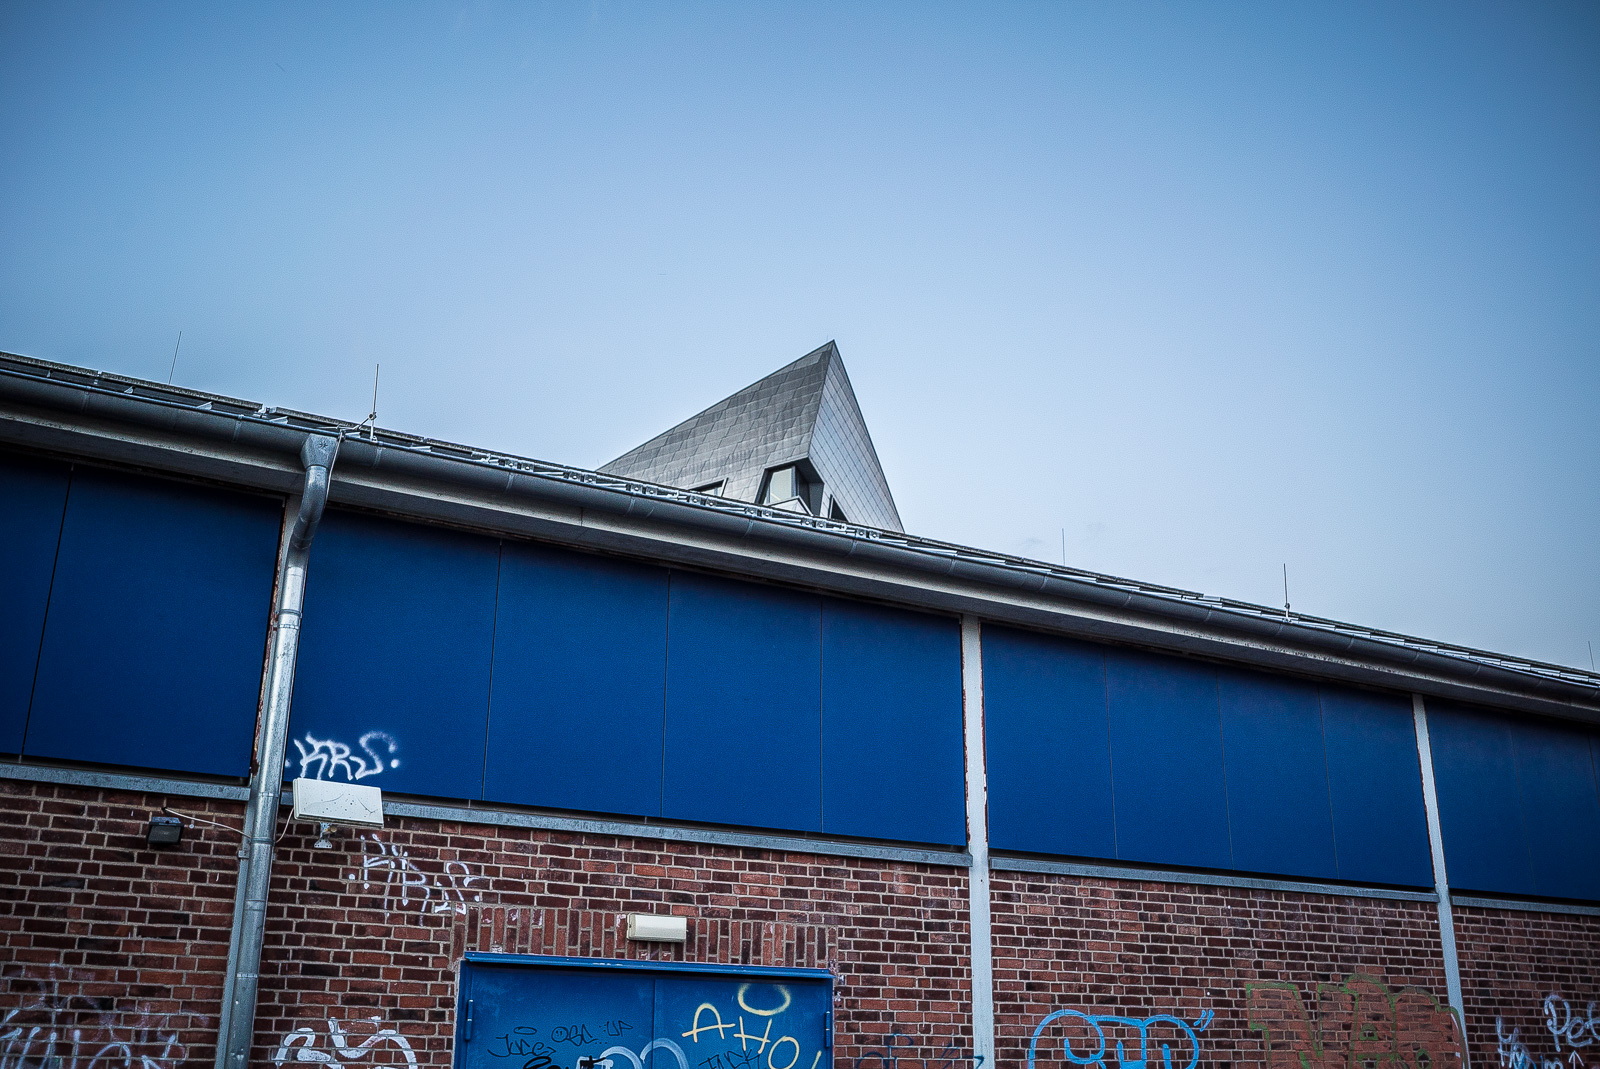 Die Spitze des Hauptgebäudes der Leuphana Universität Lüneburg schaut über dem Dach eines unten geklinkerten, oben blau verkleideten, mit Graffiti beschmierten Schuppens hervor